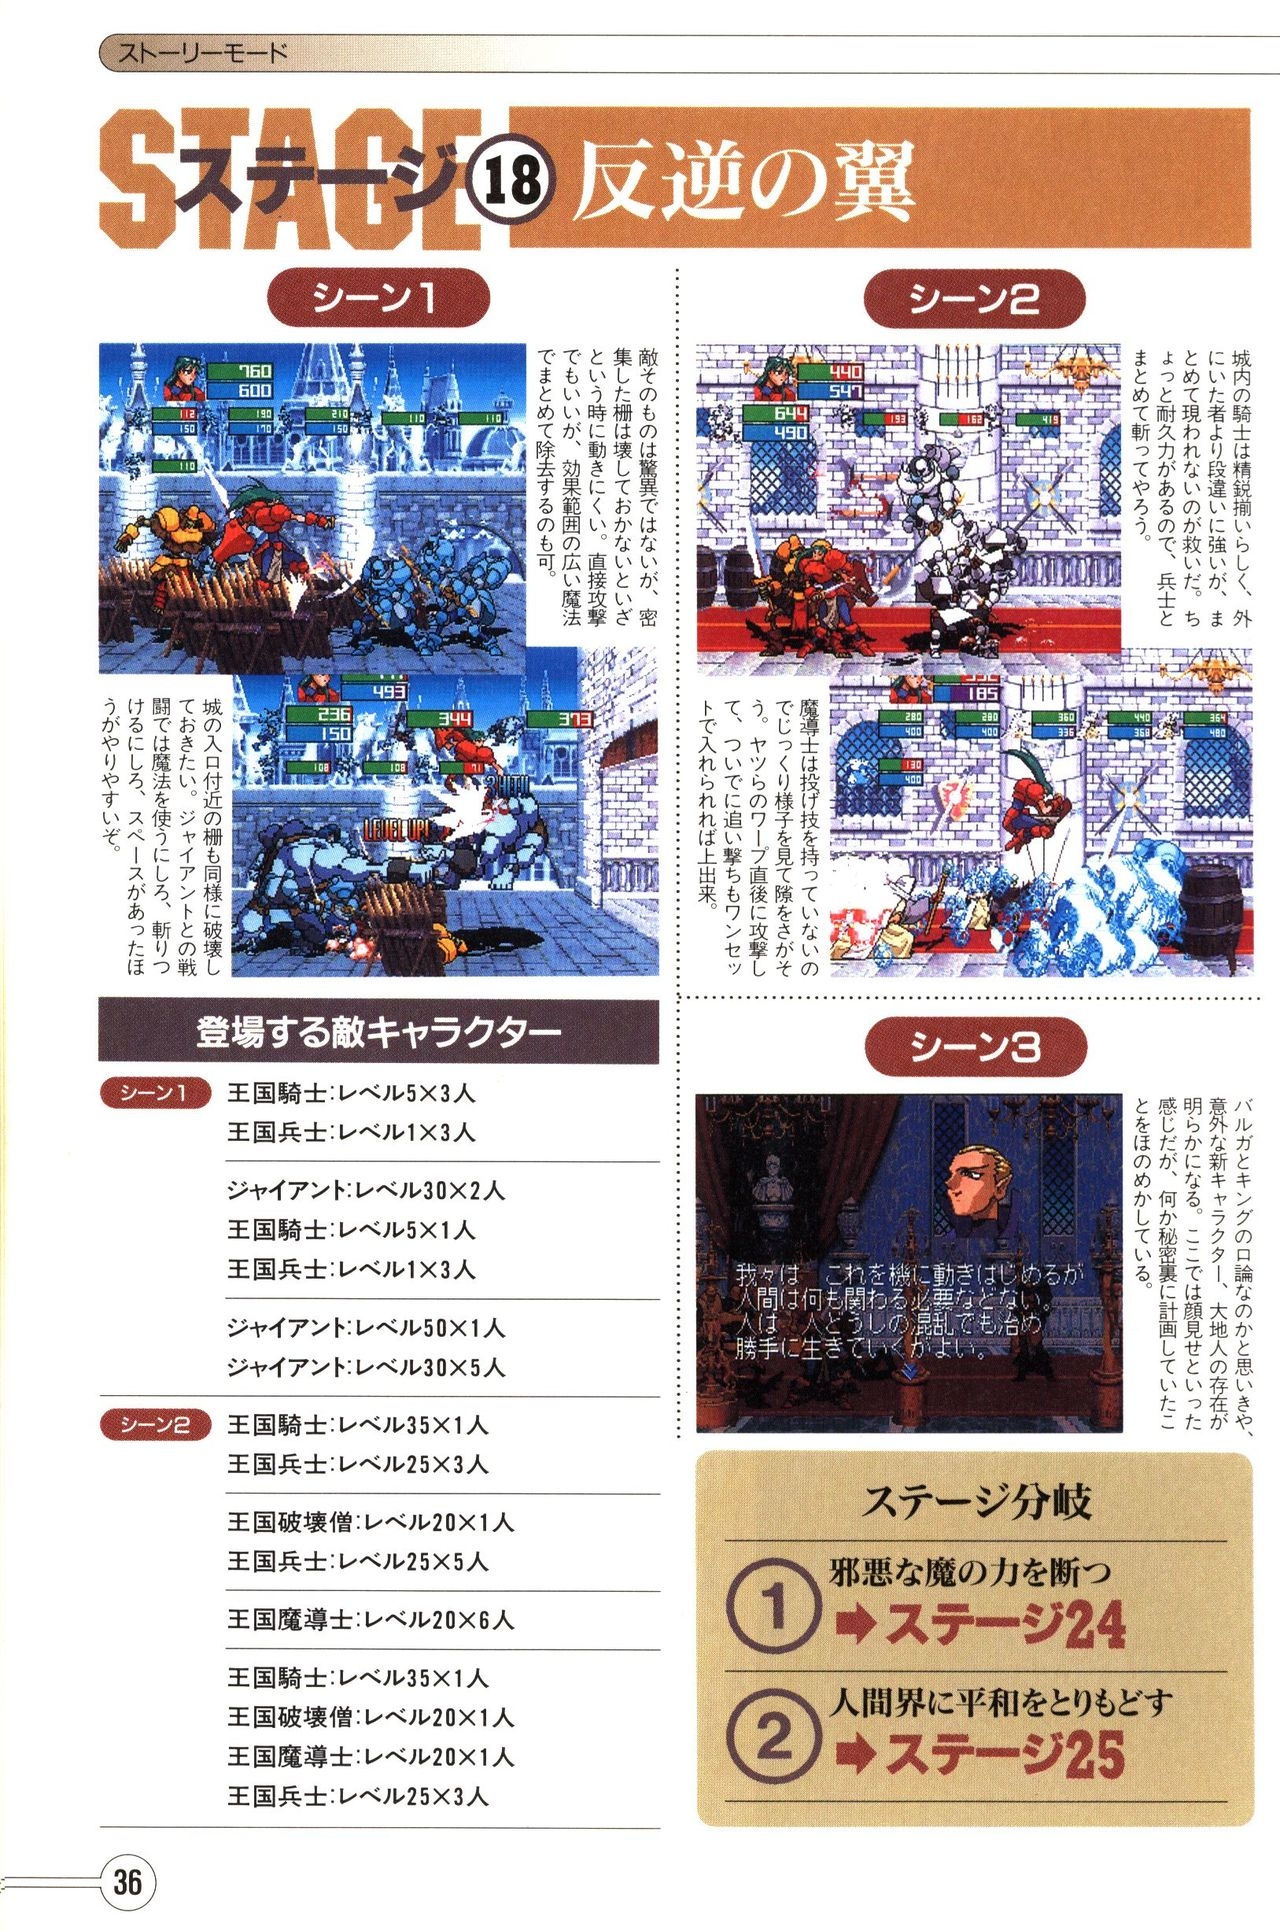 Guardian Heroes Perfect Guide (Sega Saturn magazine books) 38